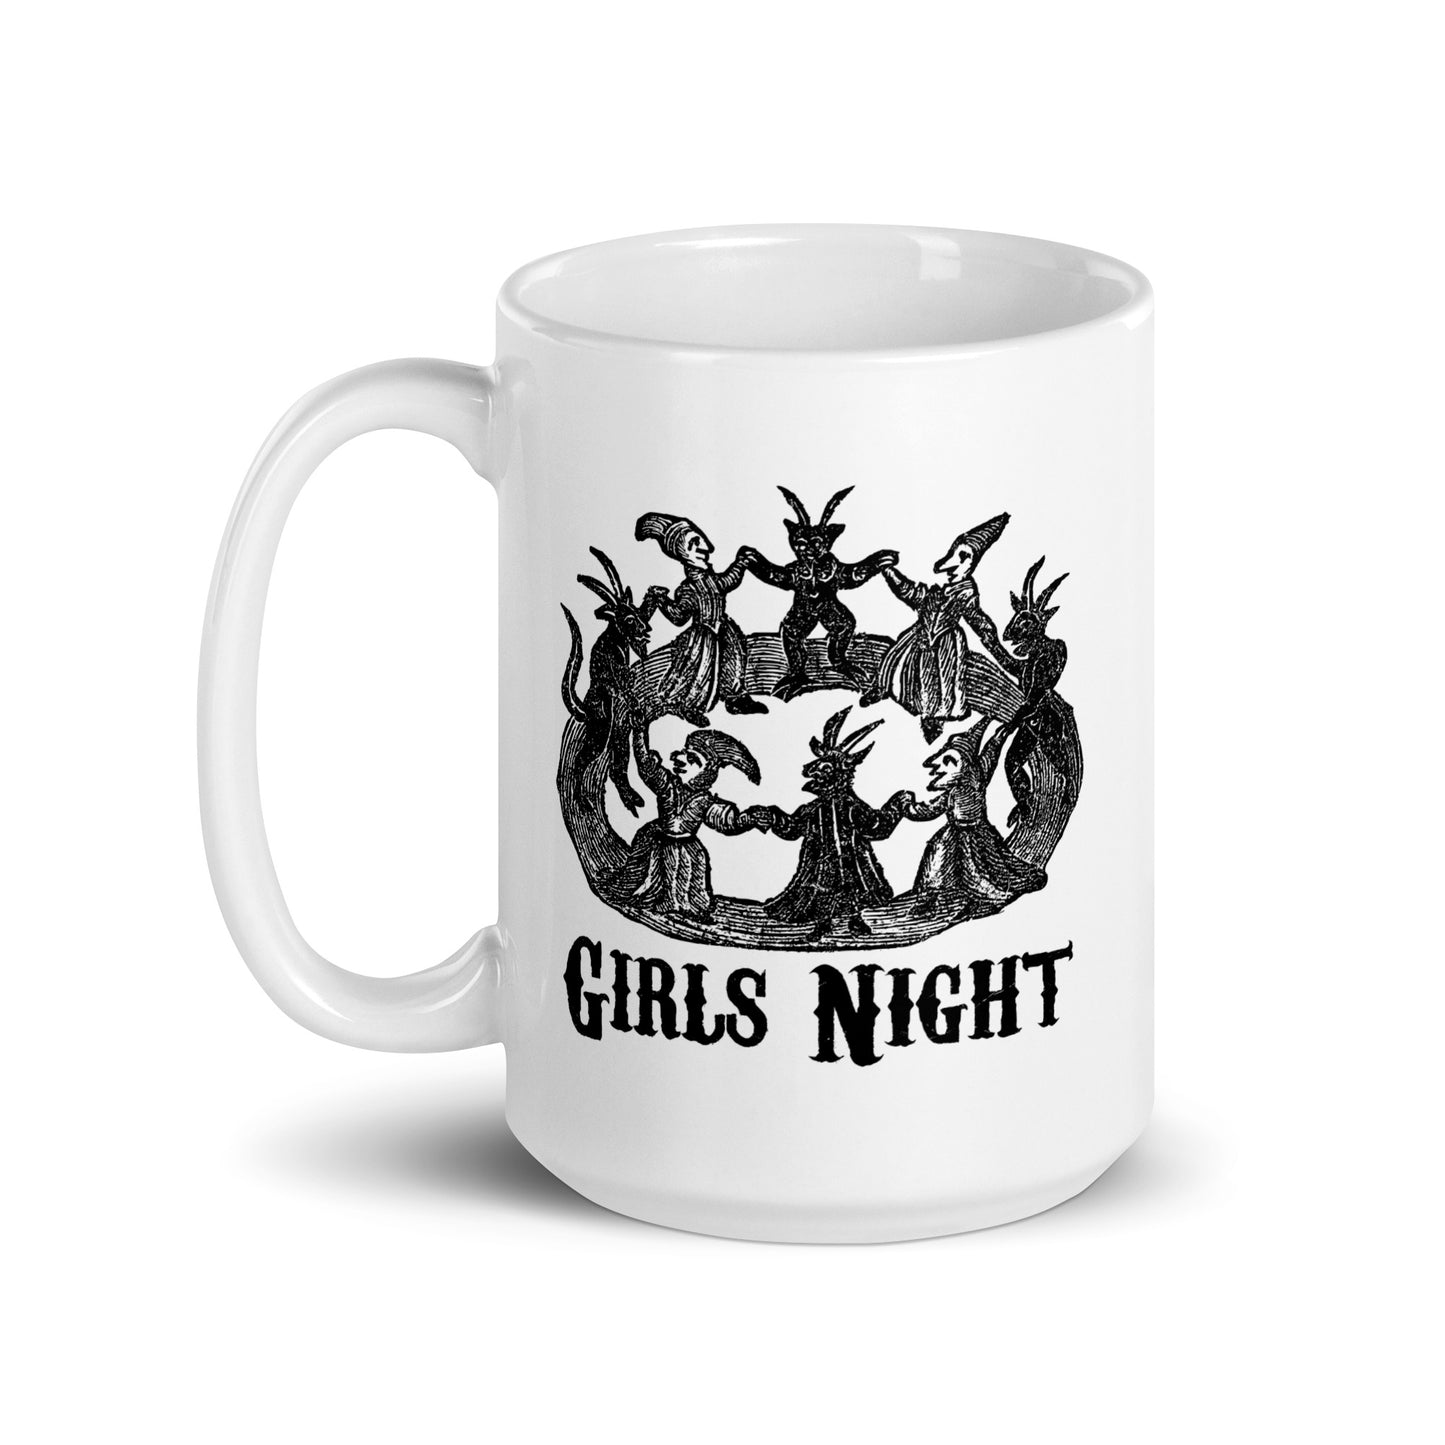 Girls Night mug